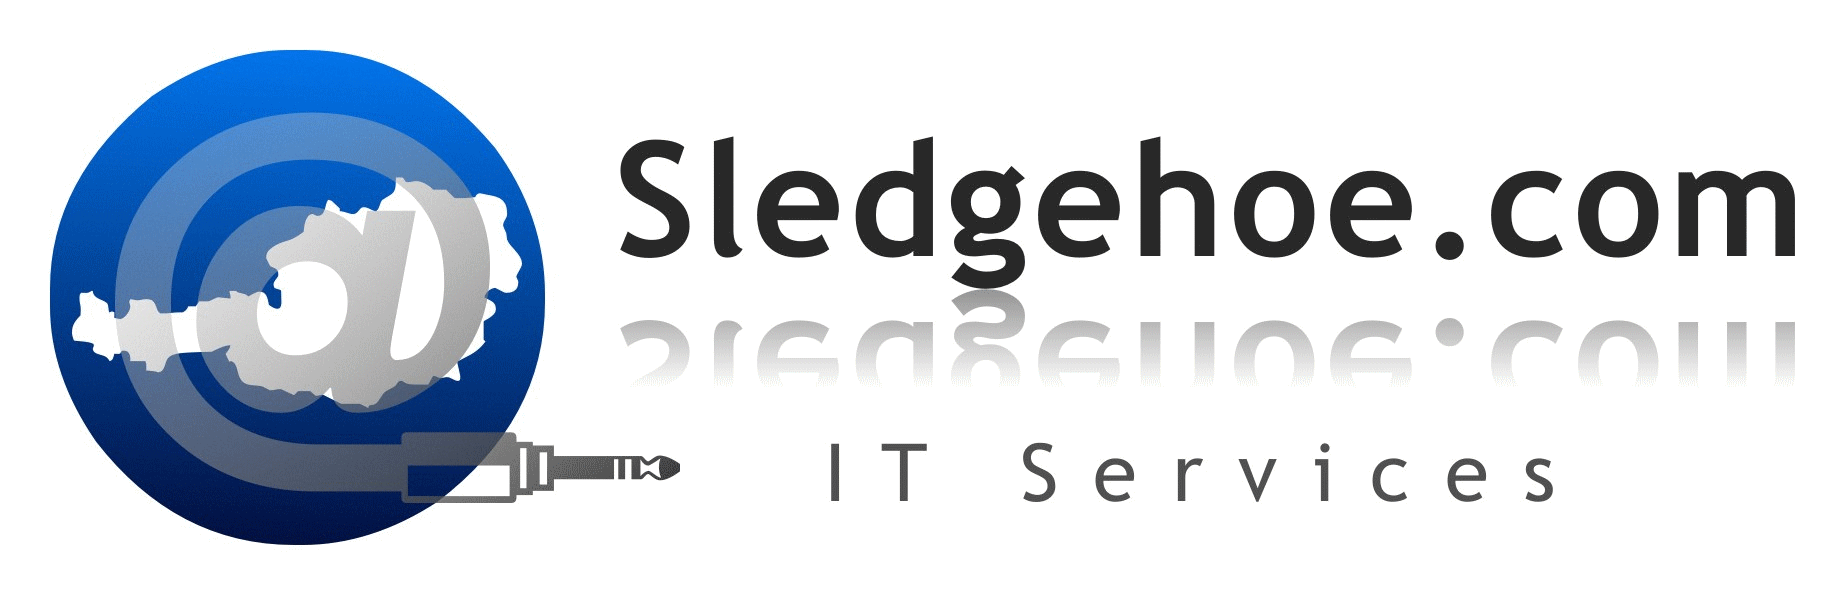 Sledgehoe.com Logo